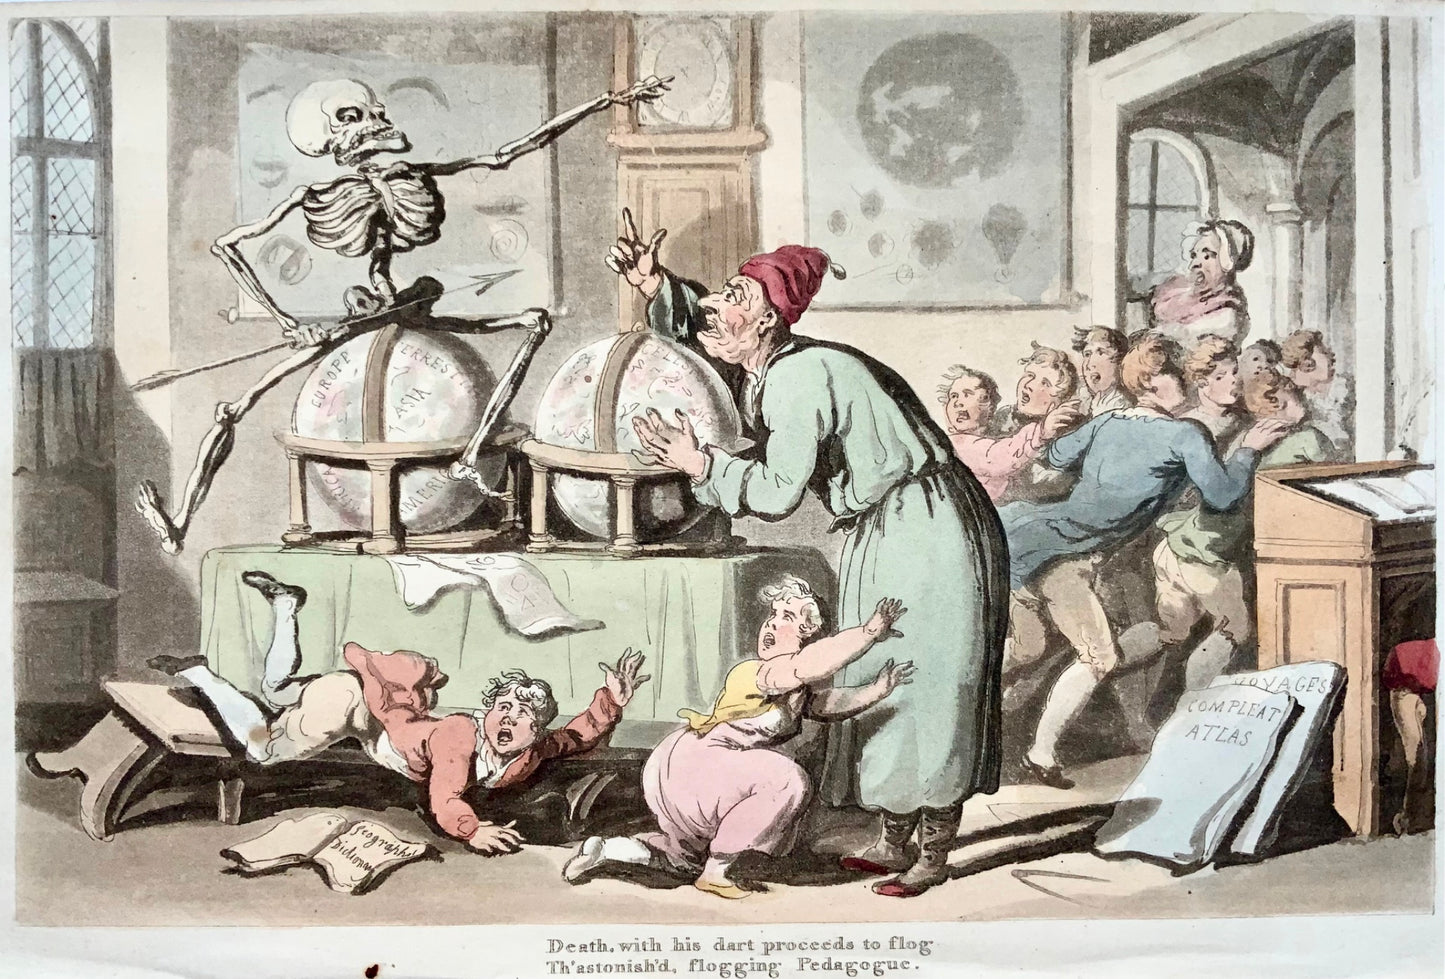 1815 Thomas Rowlandson, Danse de la mort, cartes, globes, aquatinte coloriée à la main, caricature